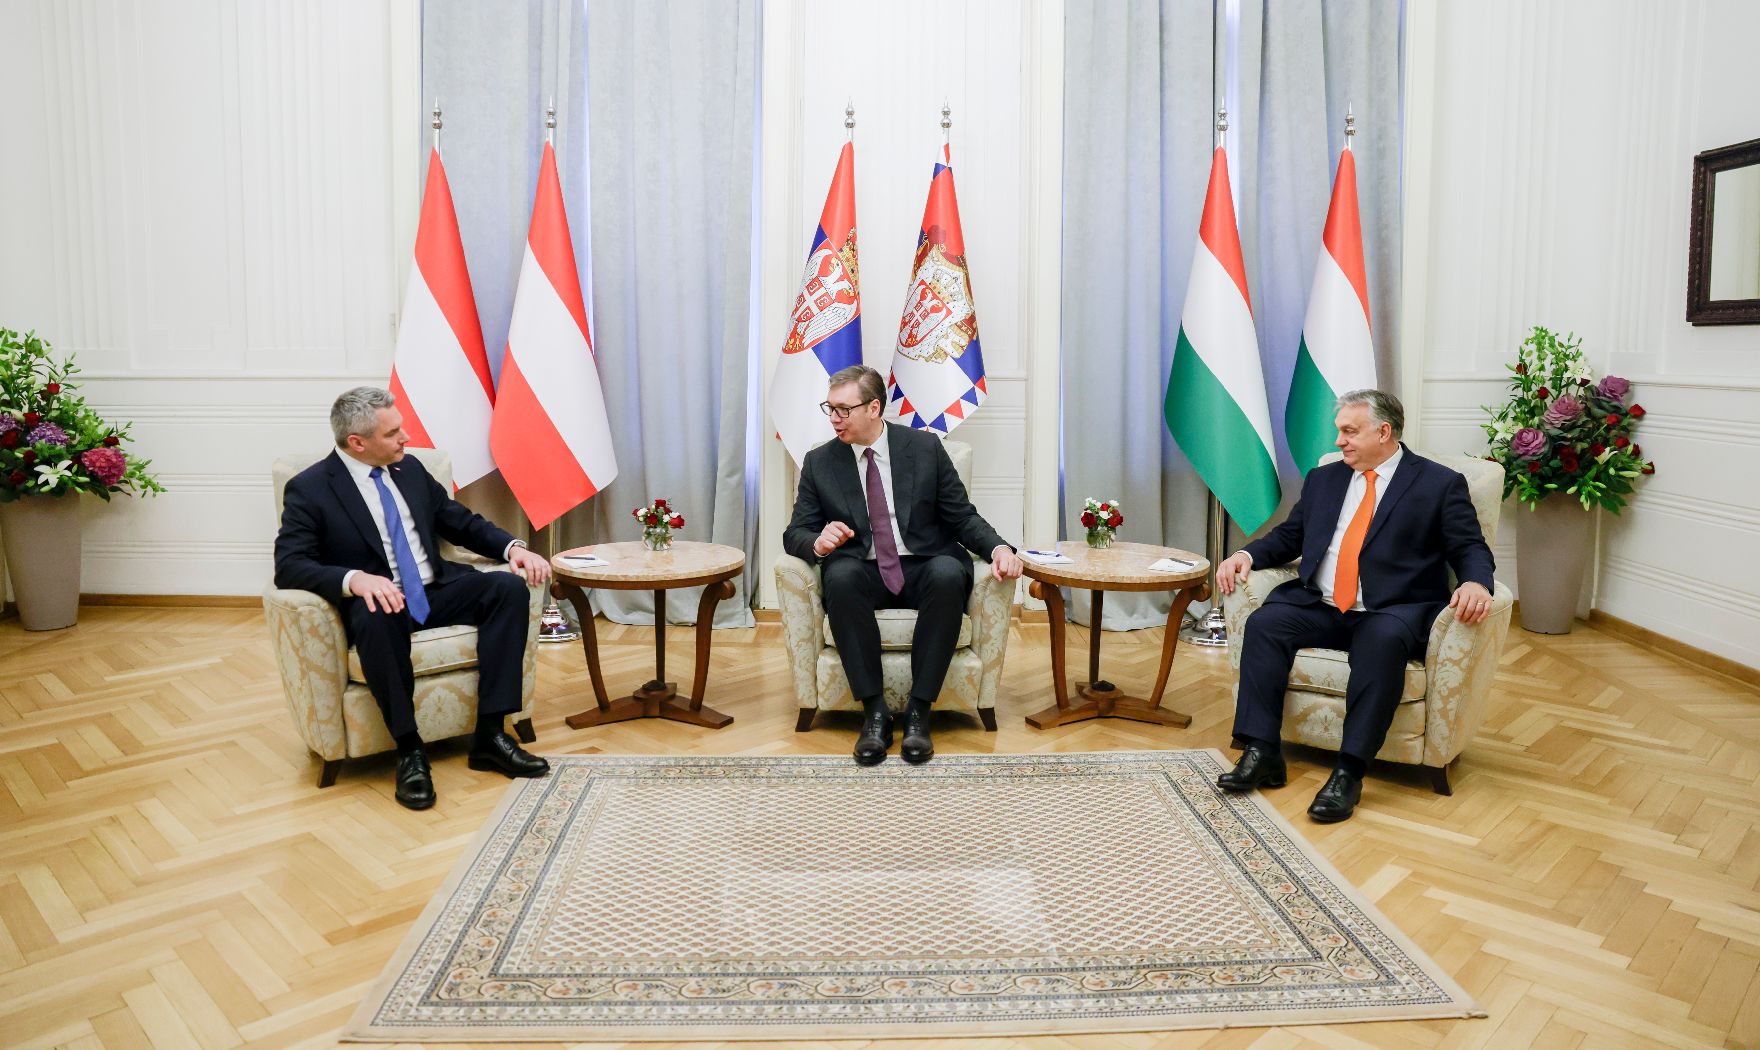 Am 17. November 2022 reiste Bundeskanzler Karl Nehammer (l.) zu einem Arbeitsbesuch nach Belgrad. Im Bild mit dem serbischen Präsident Aleksandar Vucic (m.) und dem ungarischen Ministerpräsident Viktor Orban (r.).